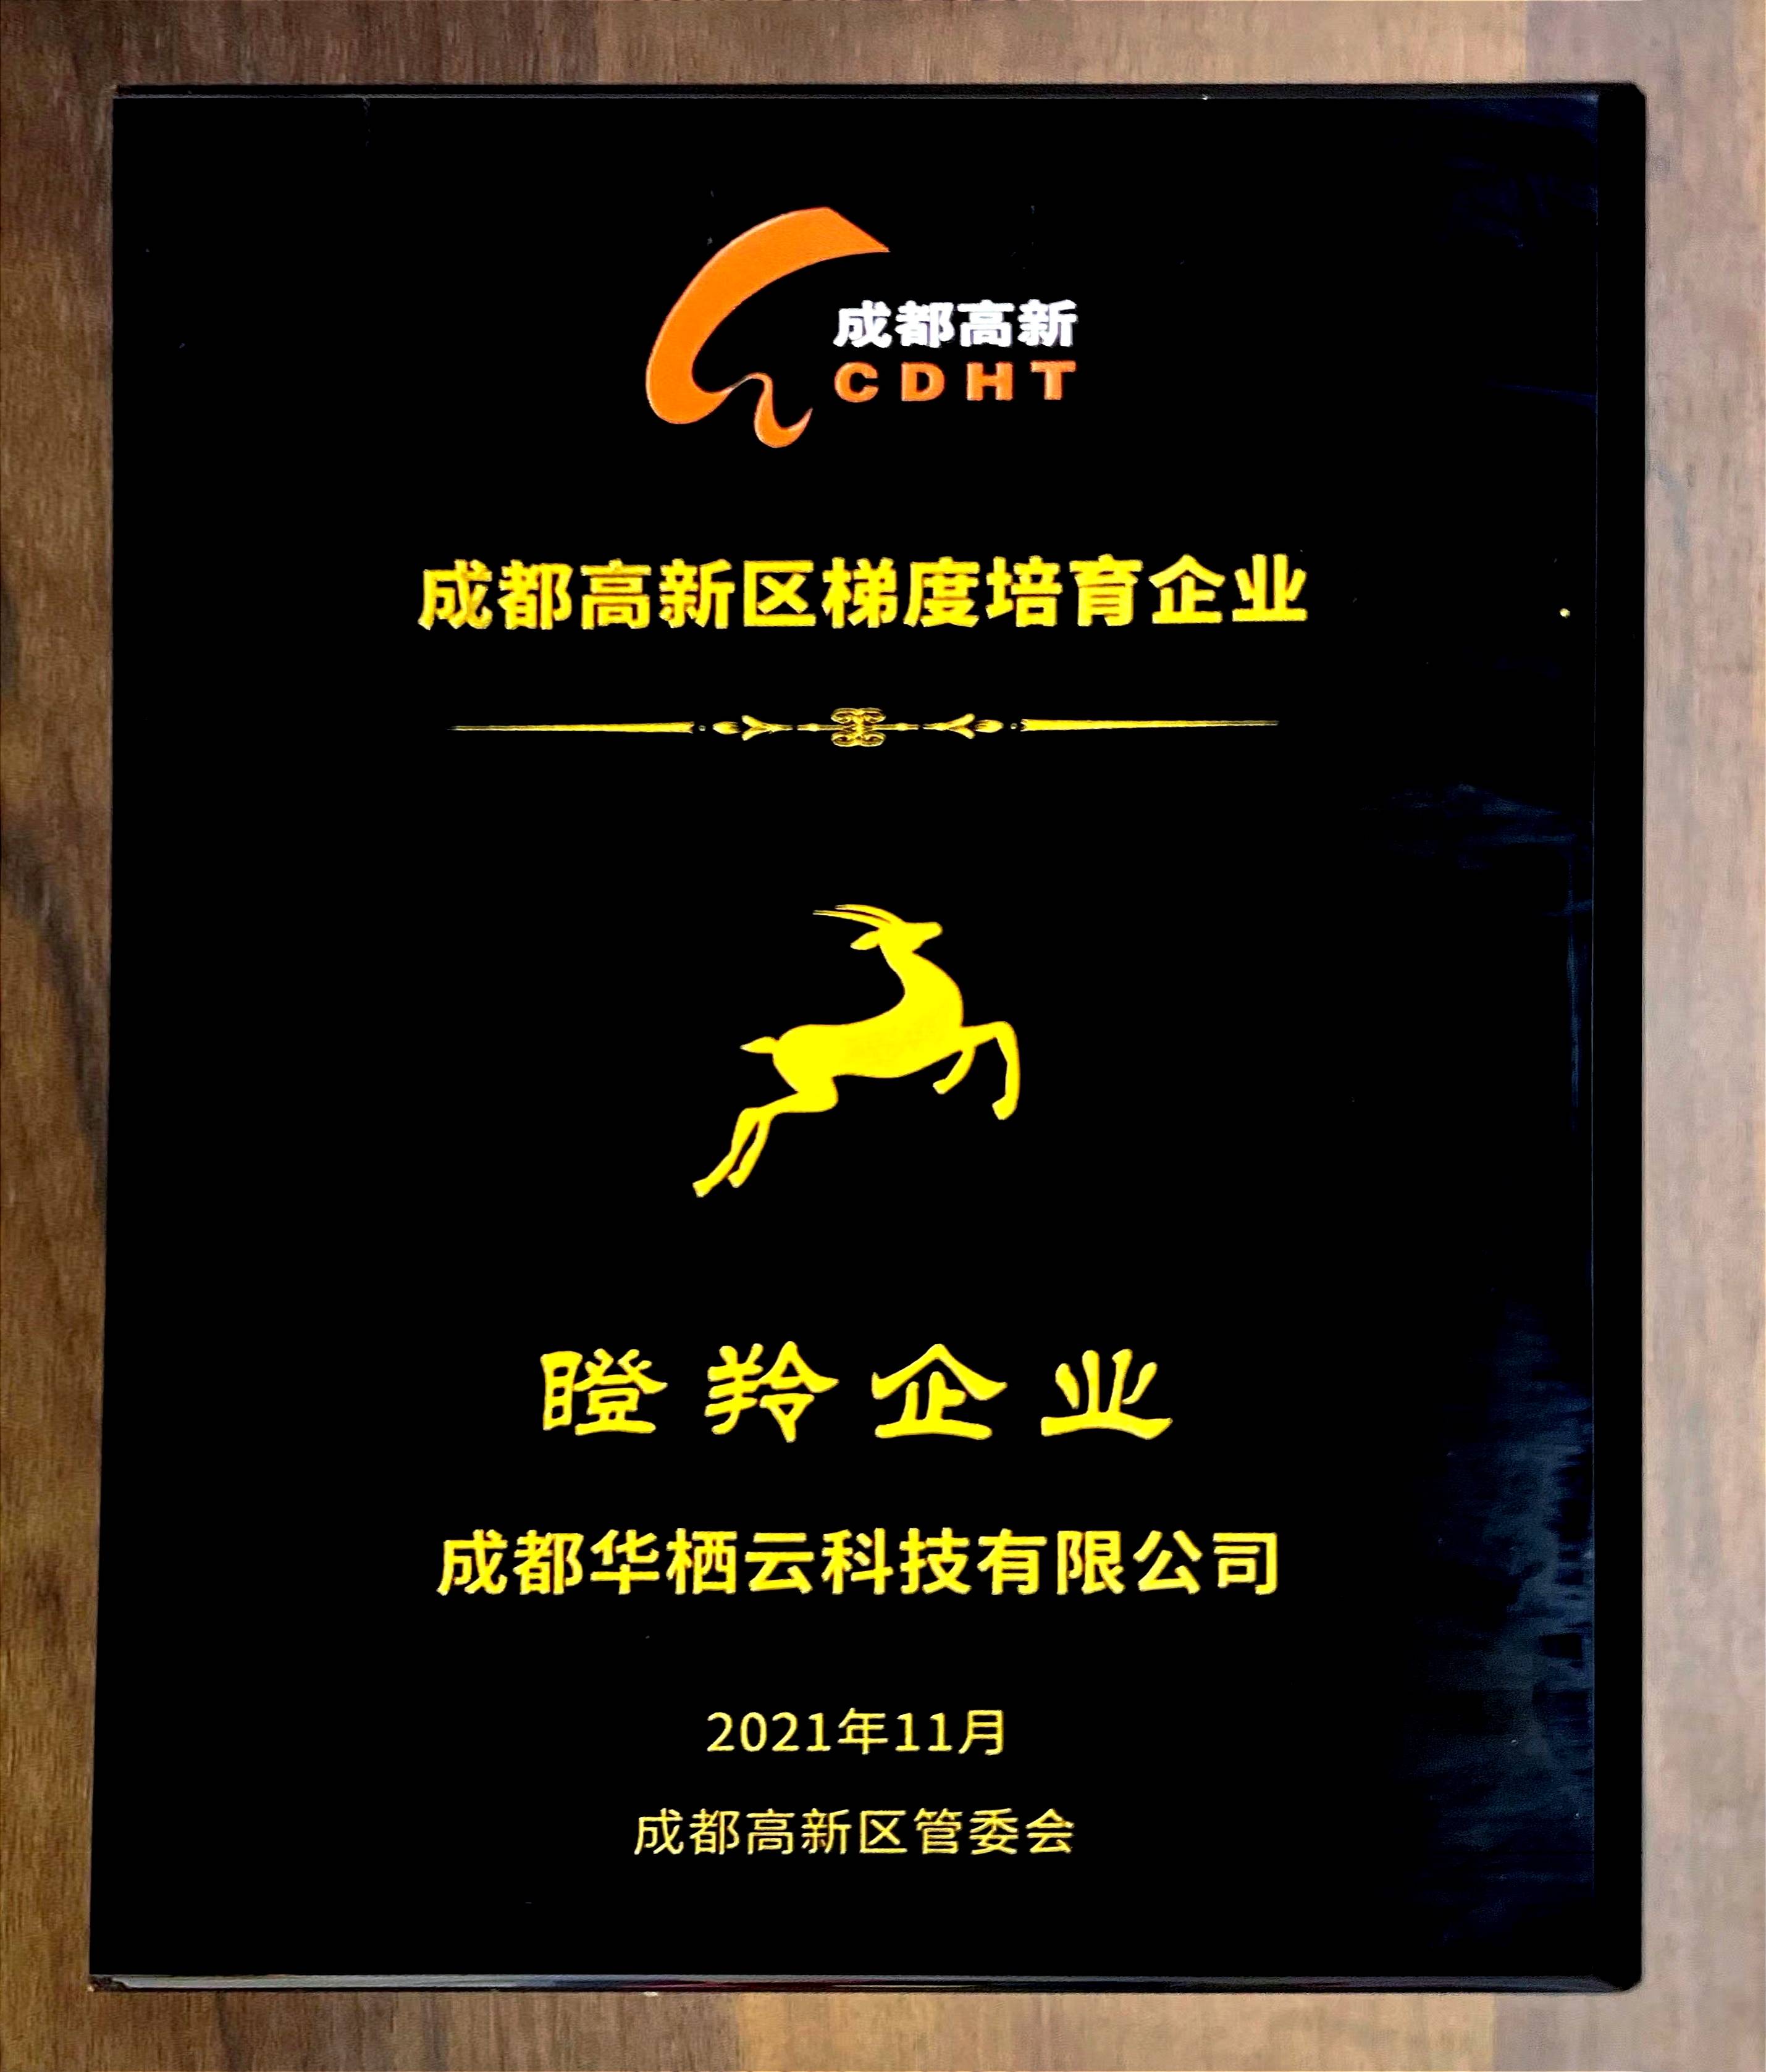 高新区瞪羚企业证书作为独角兽企业的后备军和成长无限的瞪羚